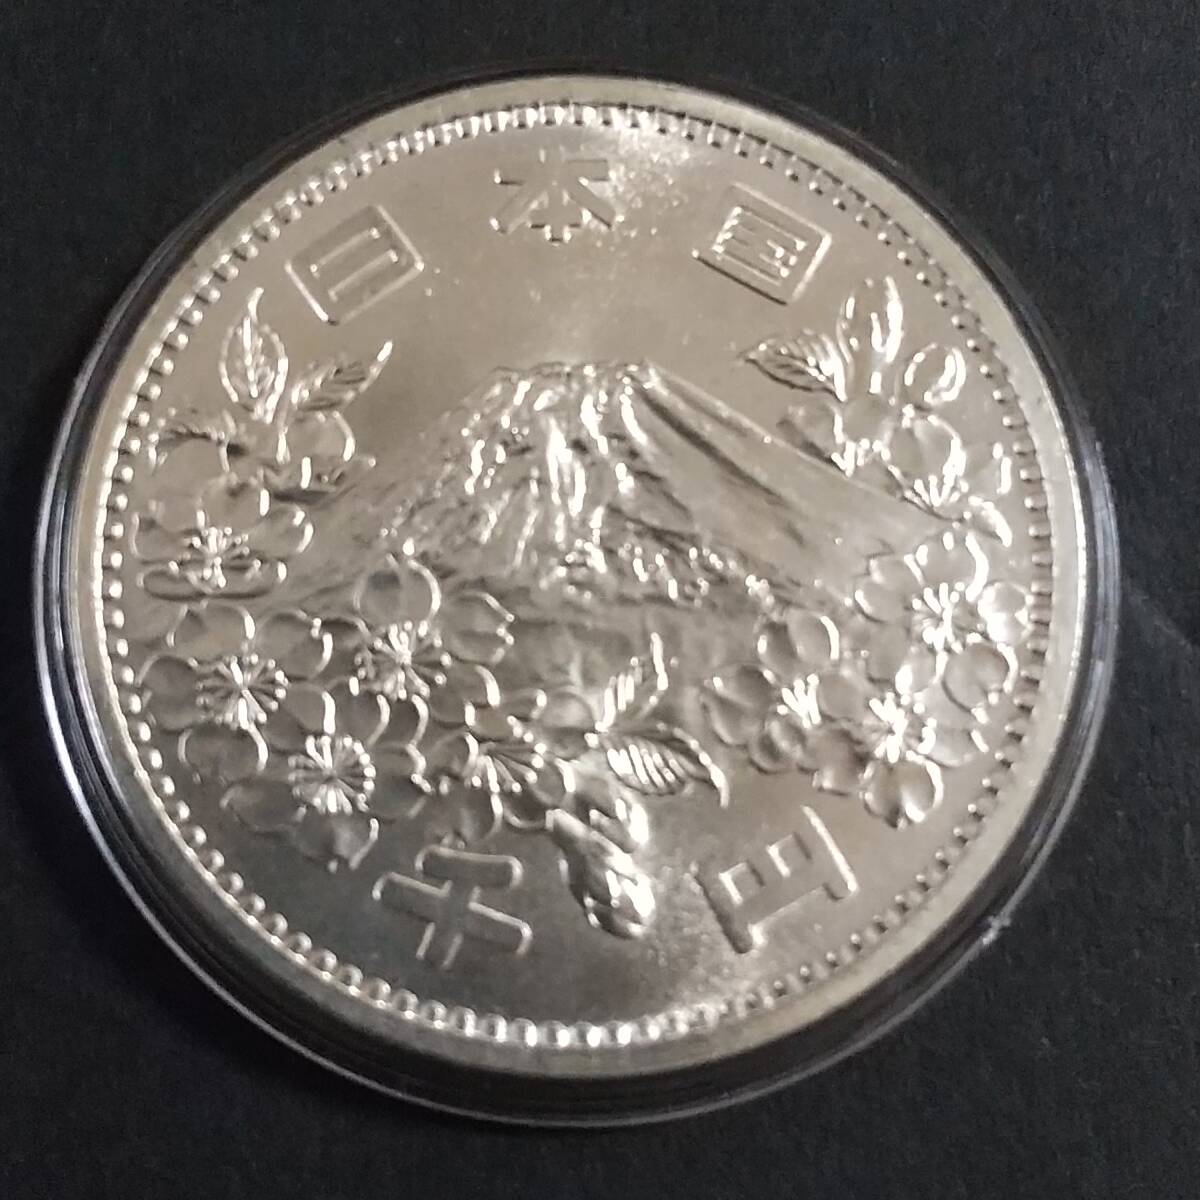 1964年発行 東京オリンピック千円銀貨 カプセル入り５枚セット 我が国初の大型記念貨幣です。_画像2